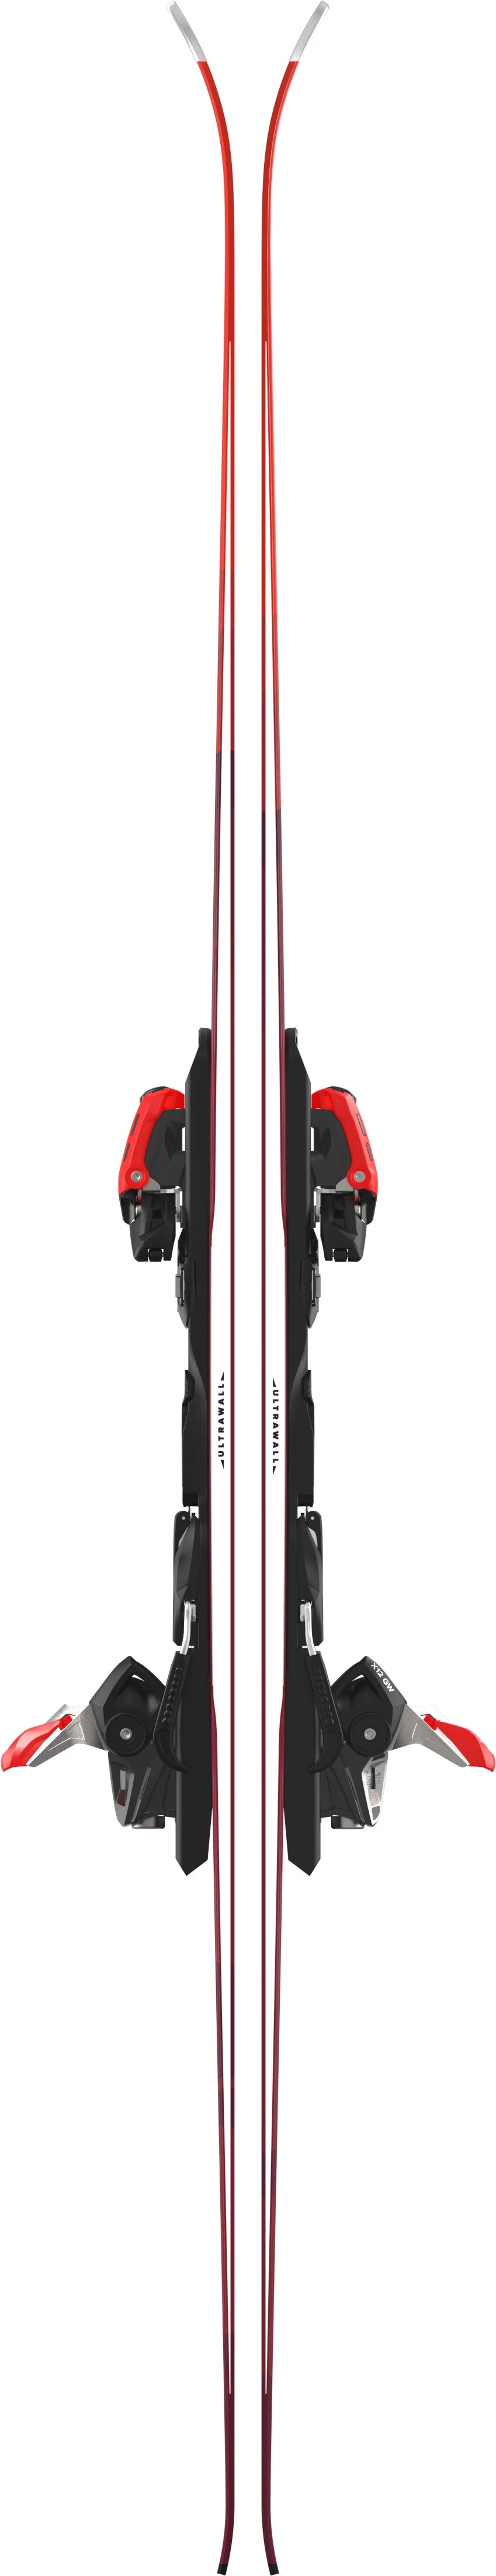 Ski Atomic Redster G9 Revoshock + bindings X 12 GW